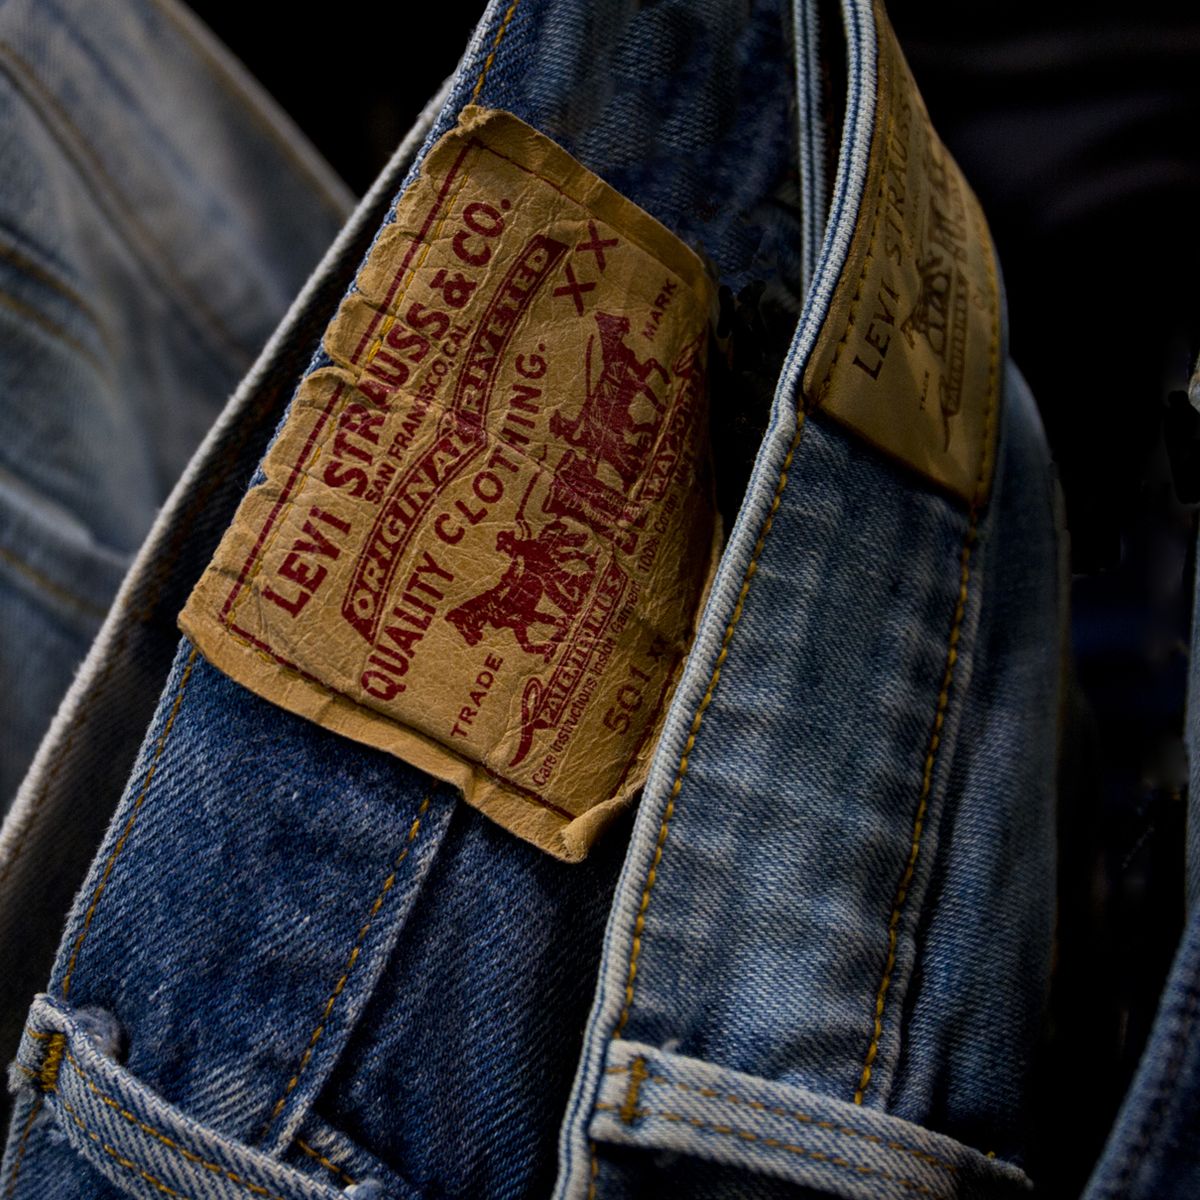 blåhval medaljevinder Antagelser, antagelser. Gætte The Complete Buying Guide to Levi's Jeans: All Fits, Explained